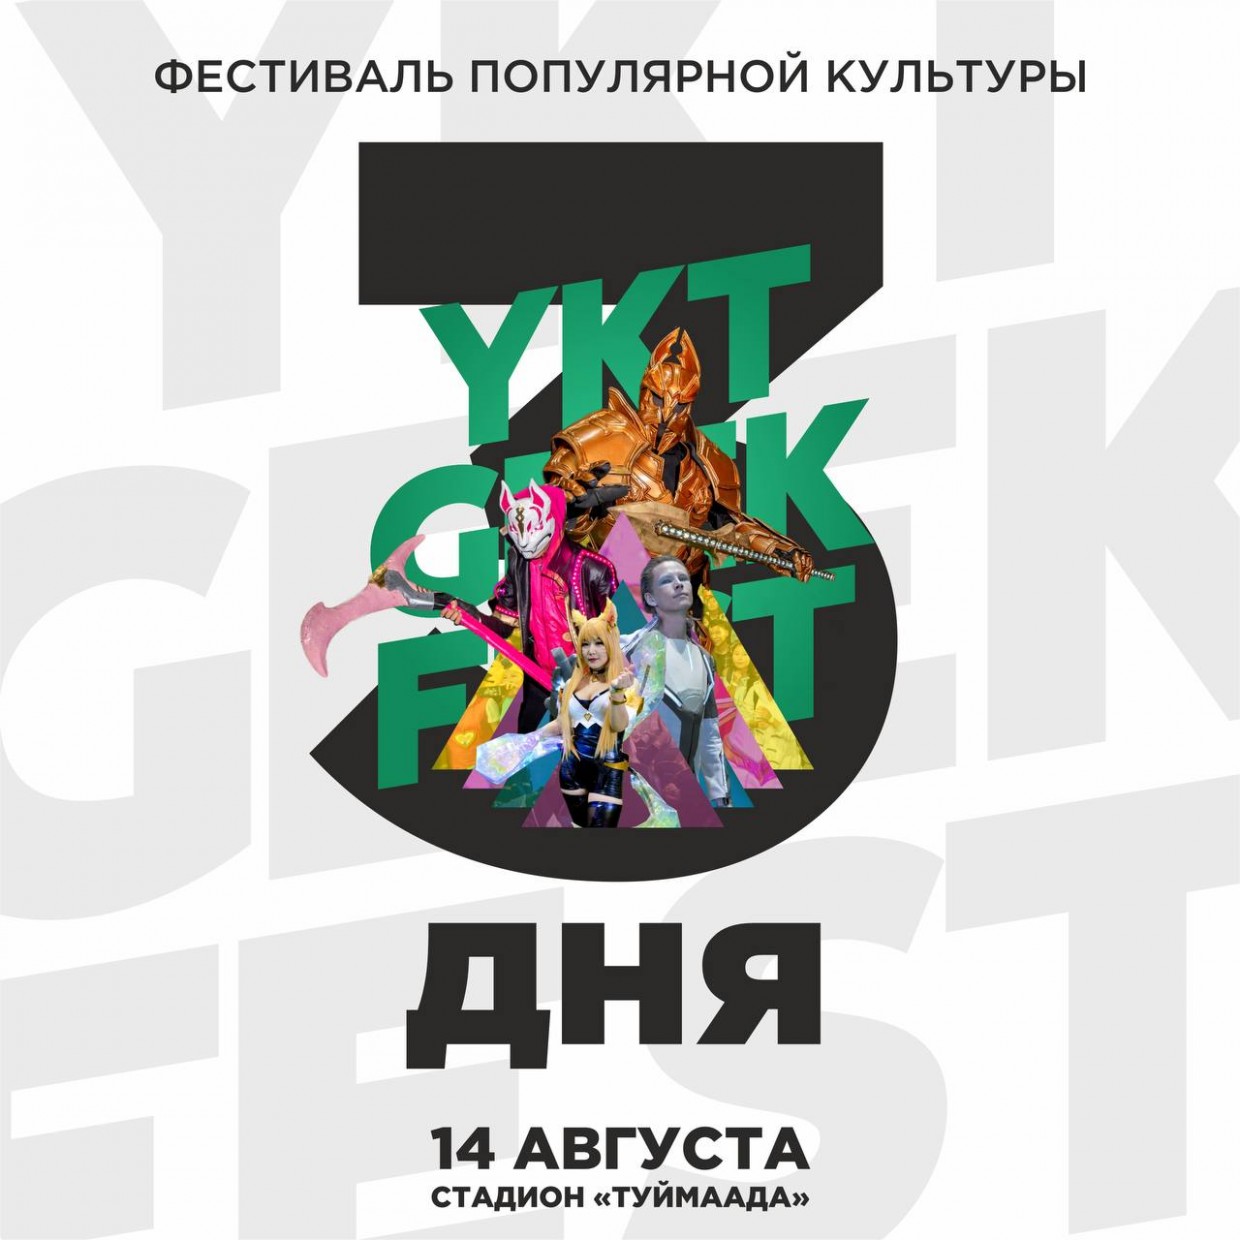 Фестиваль «YKT GEEK FEST» состоится в воскресенье в Якутске